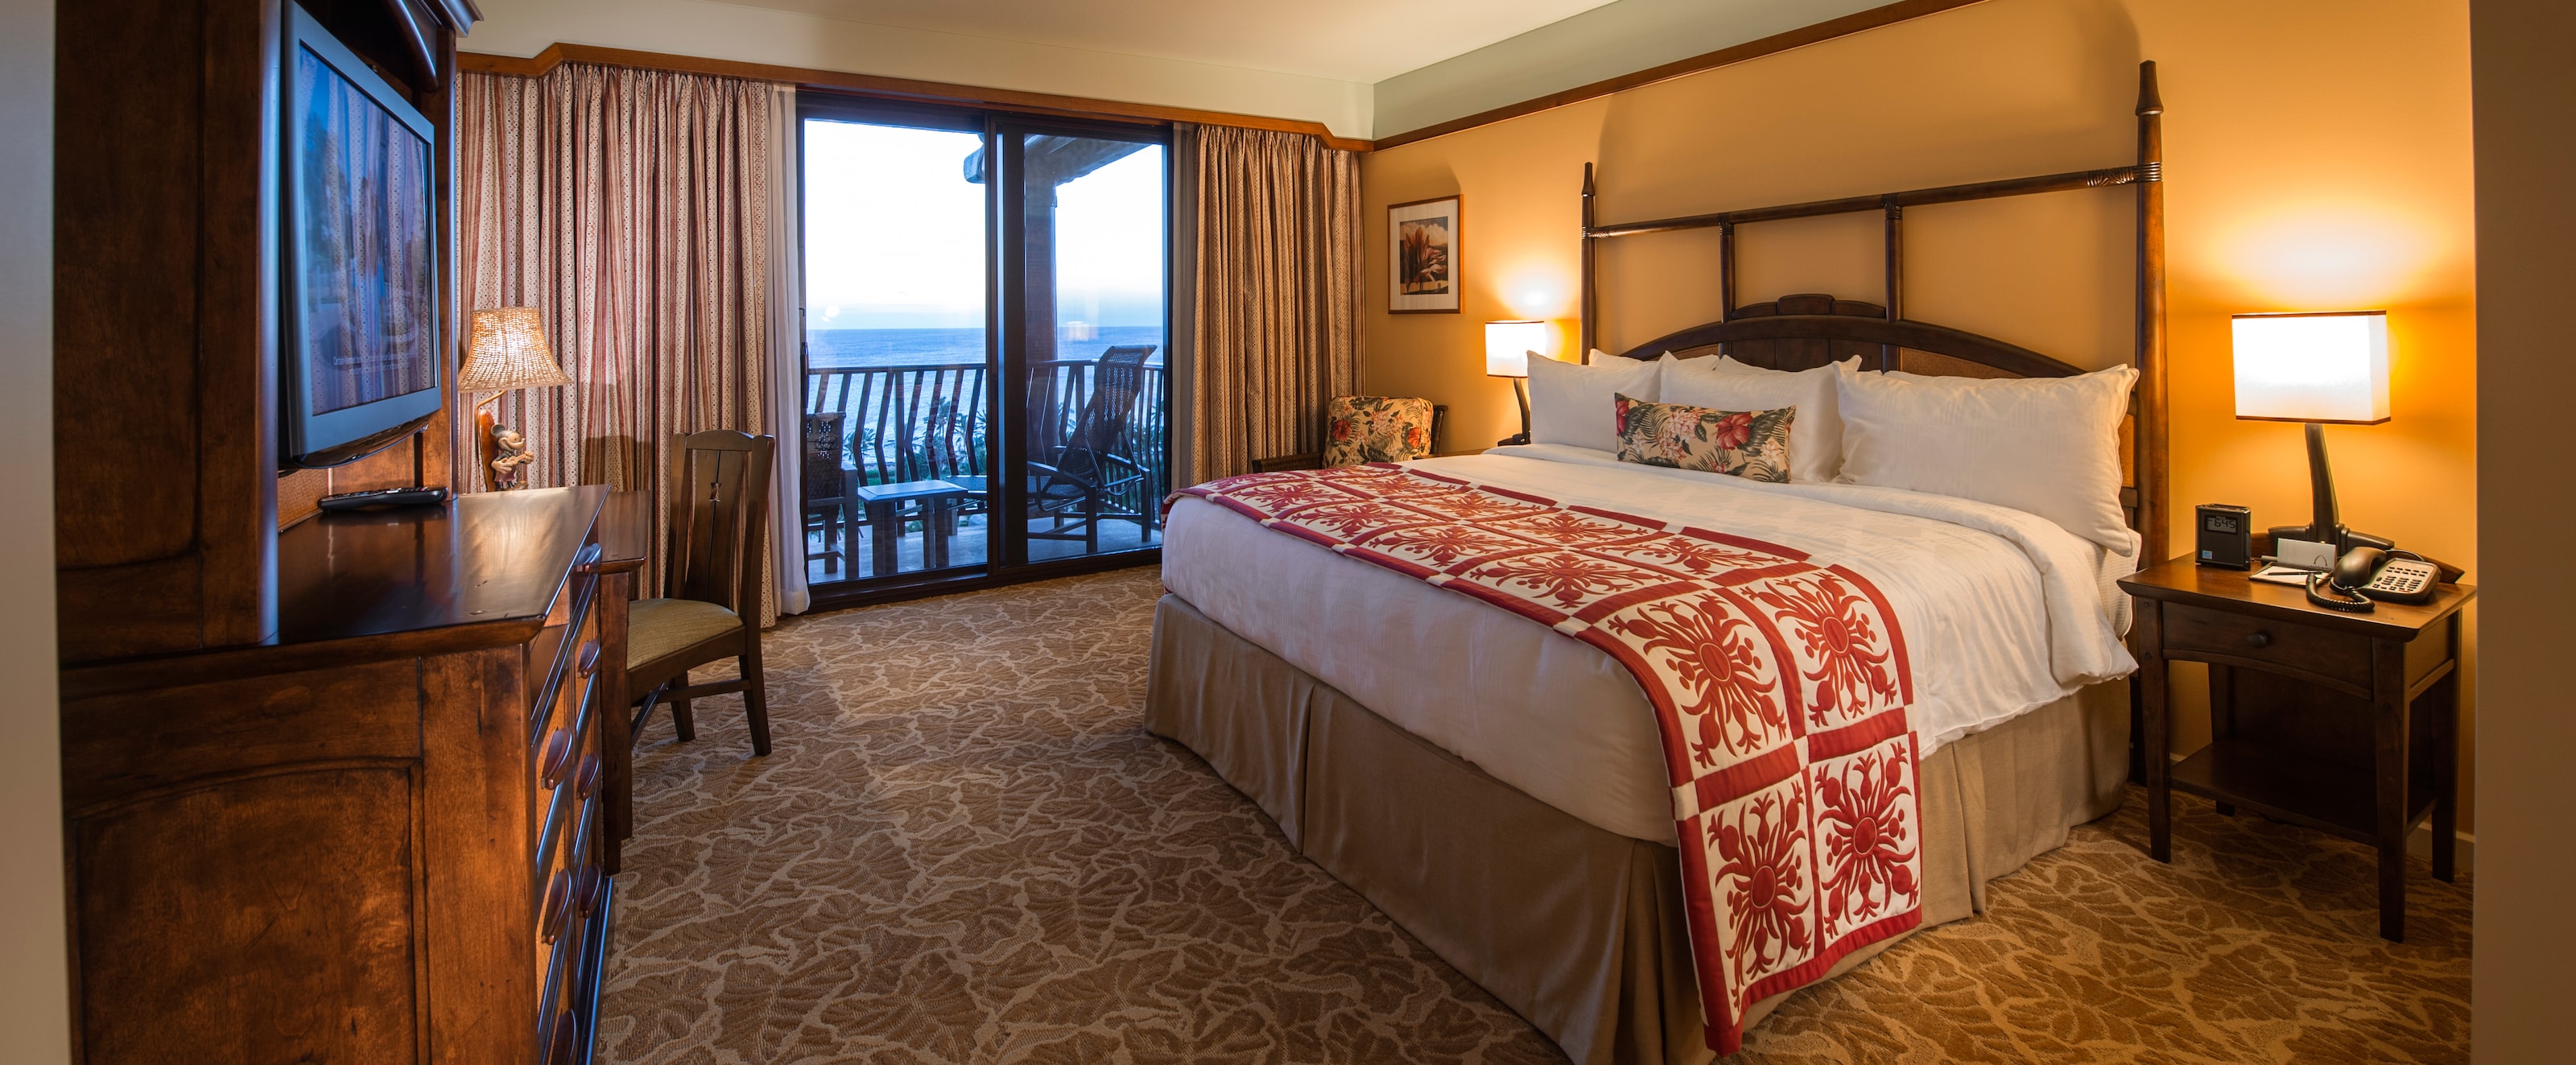 3 Bedroom Grand Villas Aulani Hawaii Resort Spa